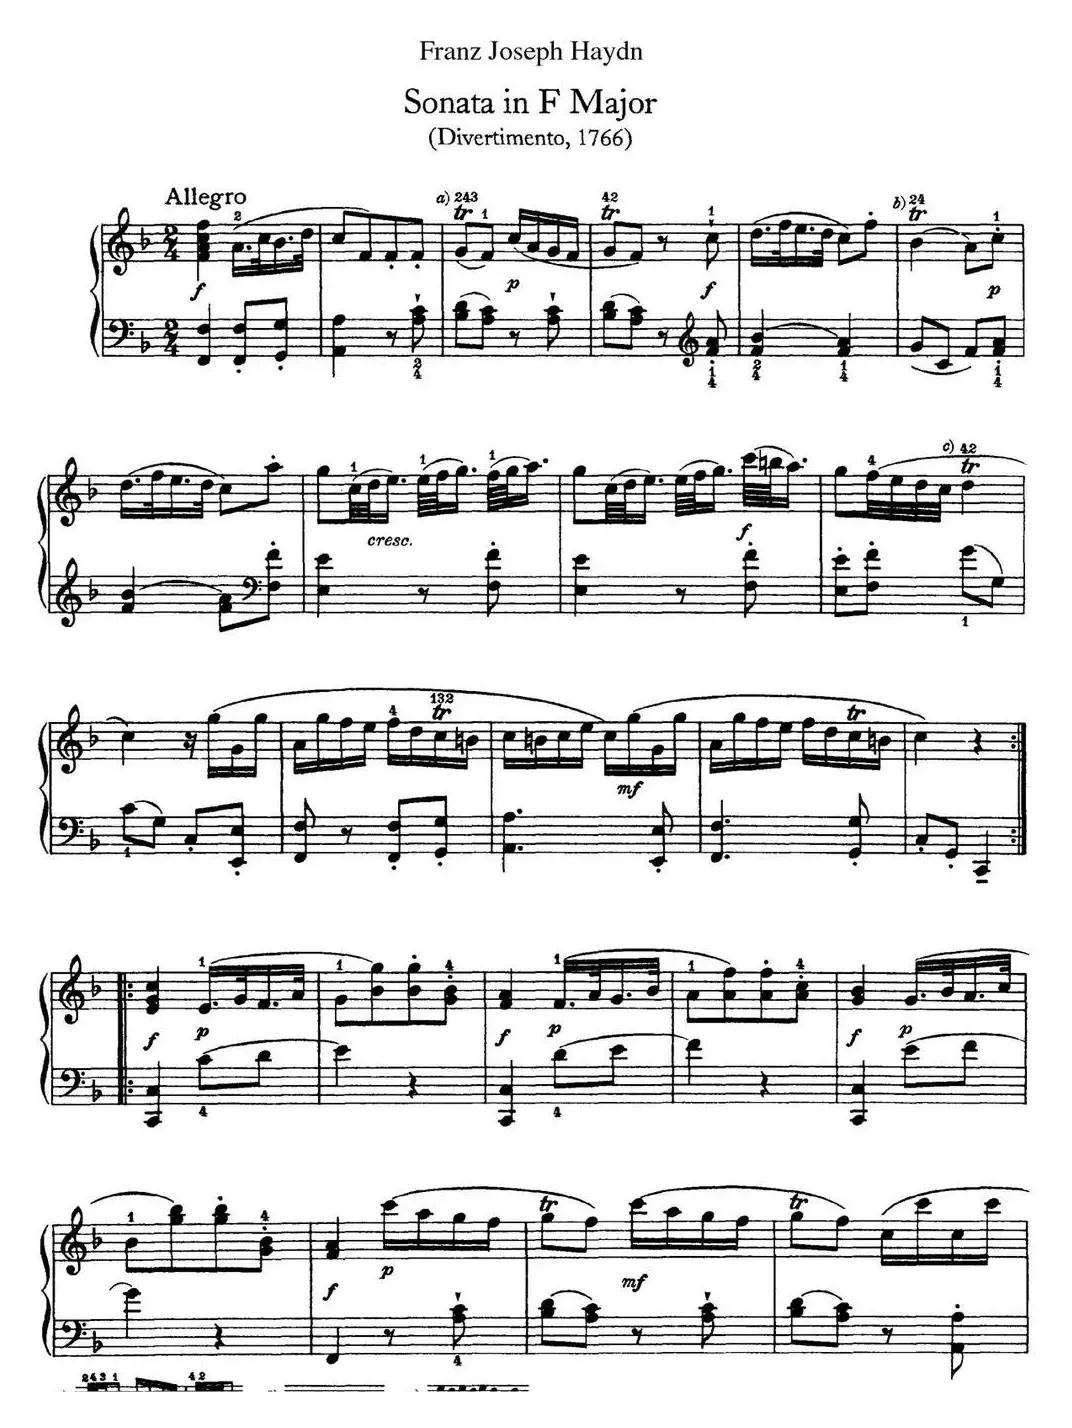 海顿 钢琴奏鸣曲 Hob XVI 9 Divertimento F major